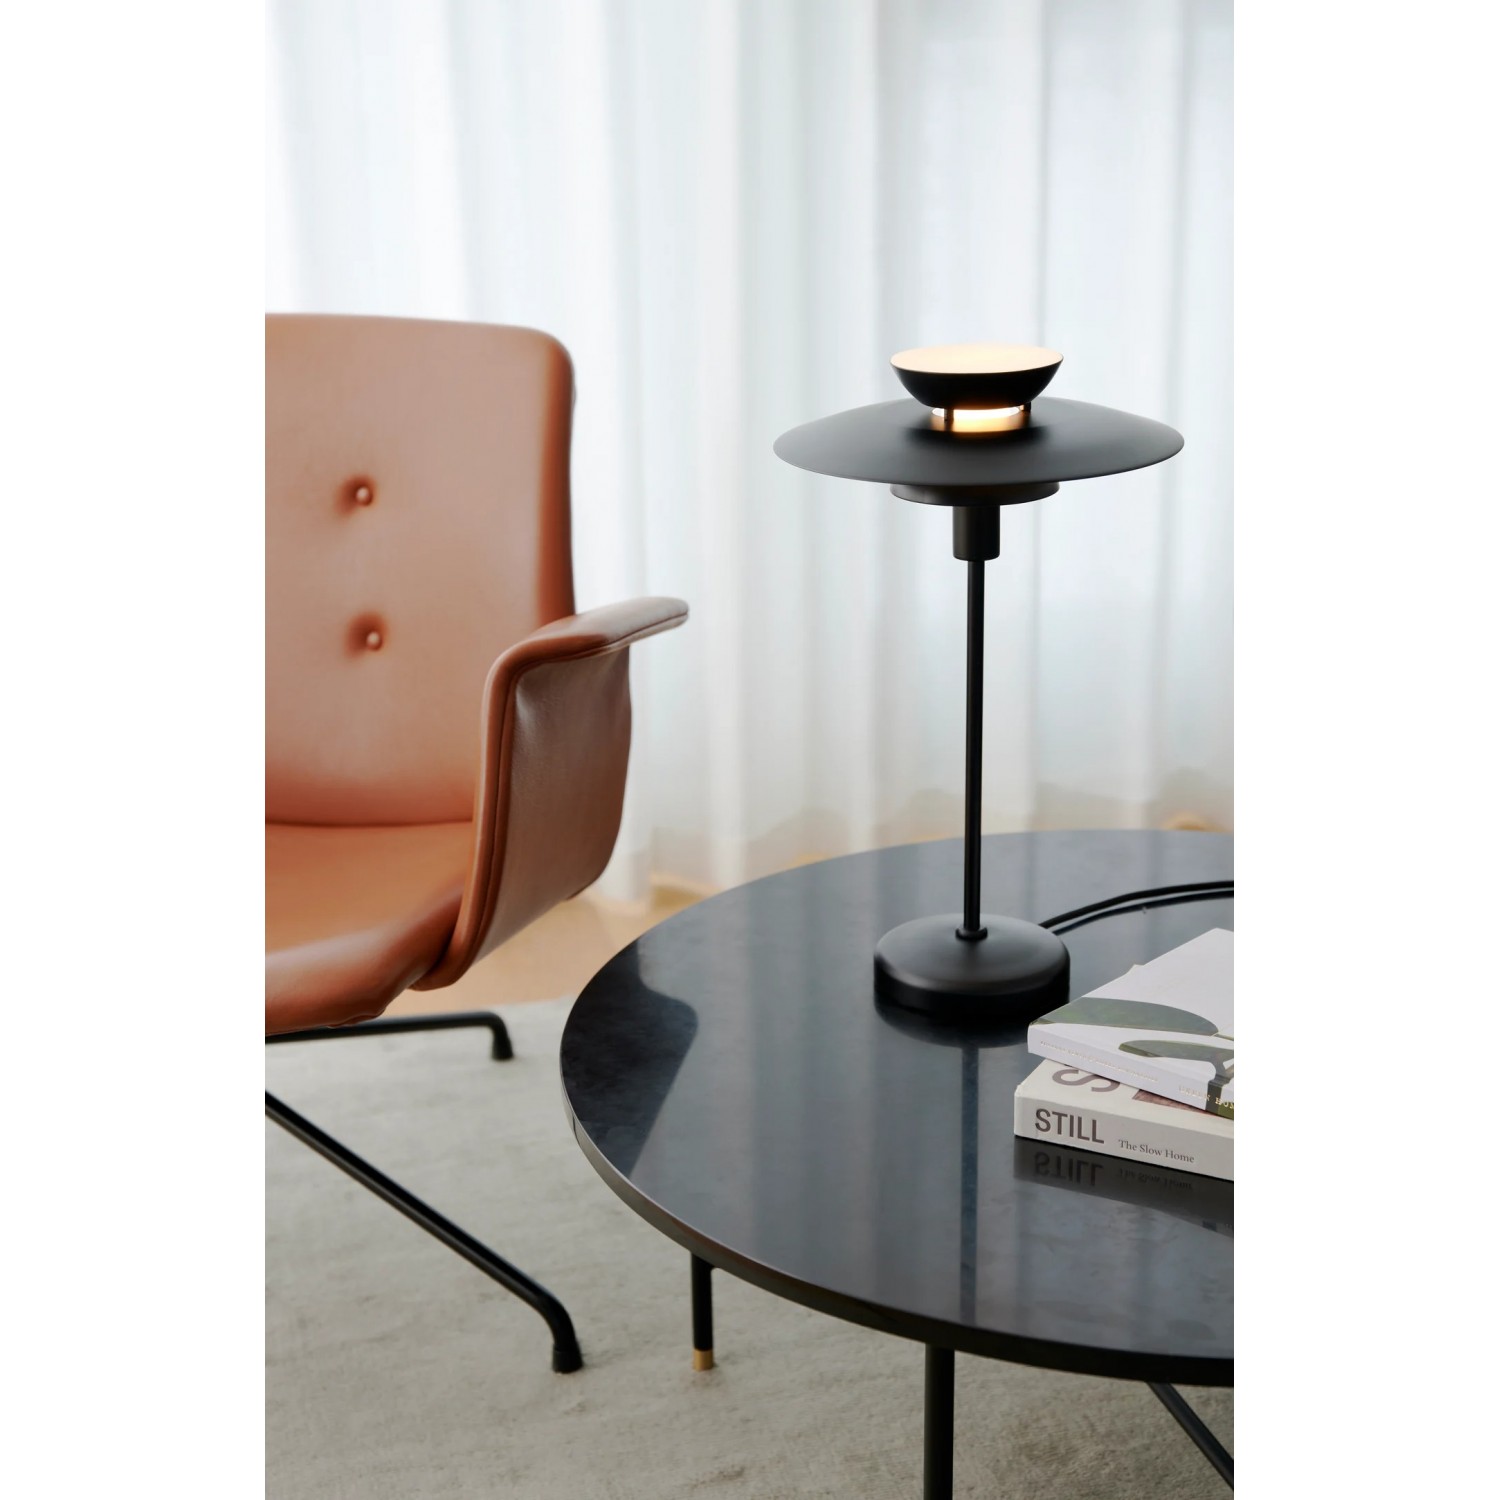 Настольная лампа Nordlux Carmen | Table | Black 2213615003